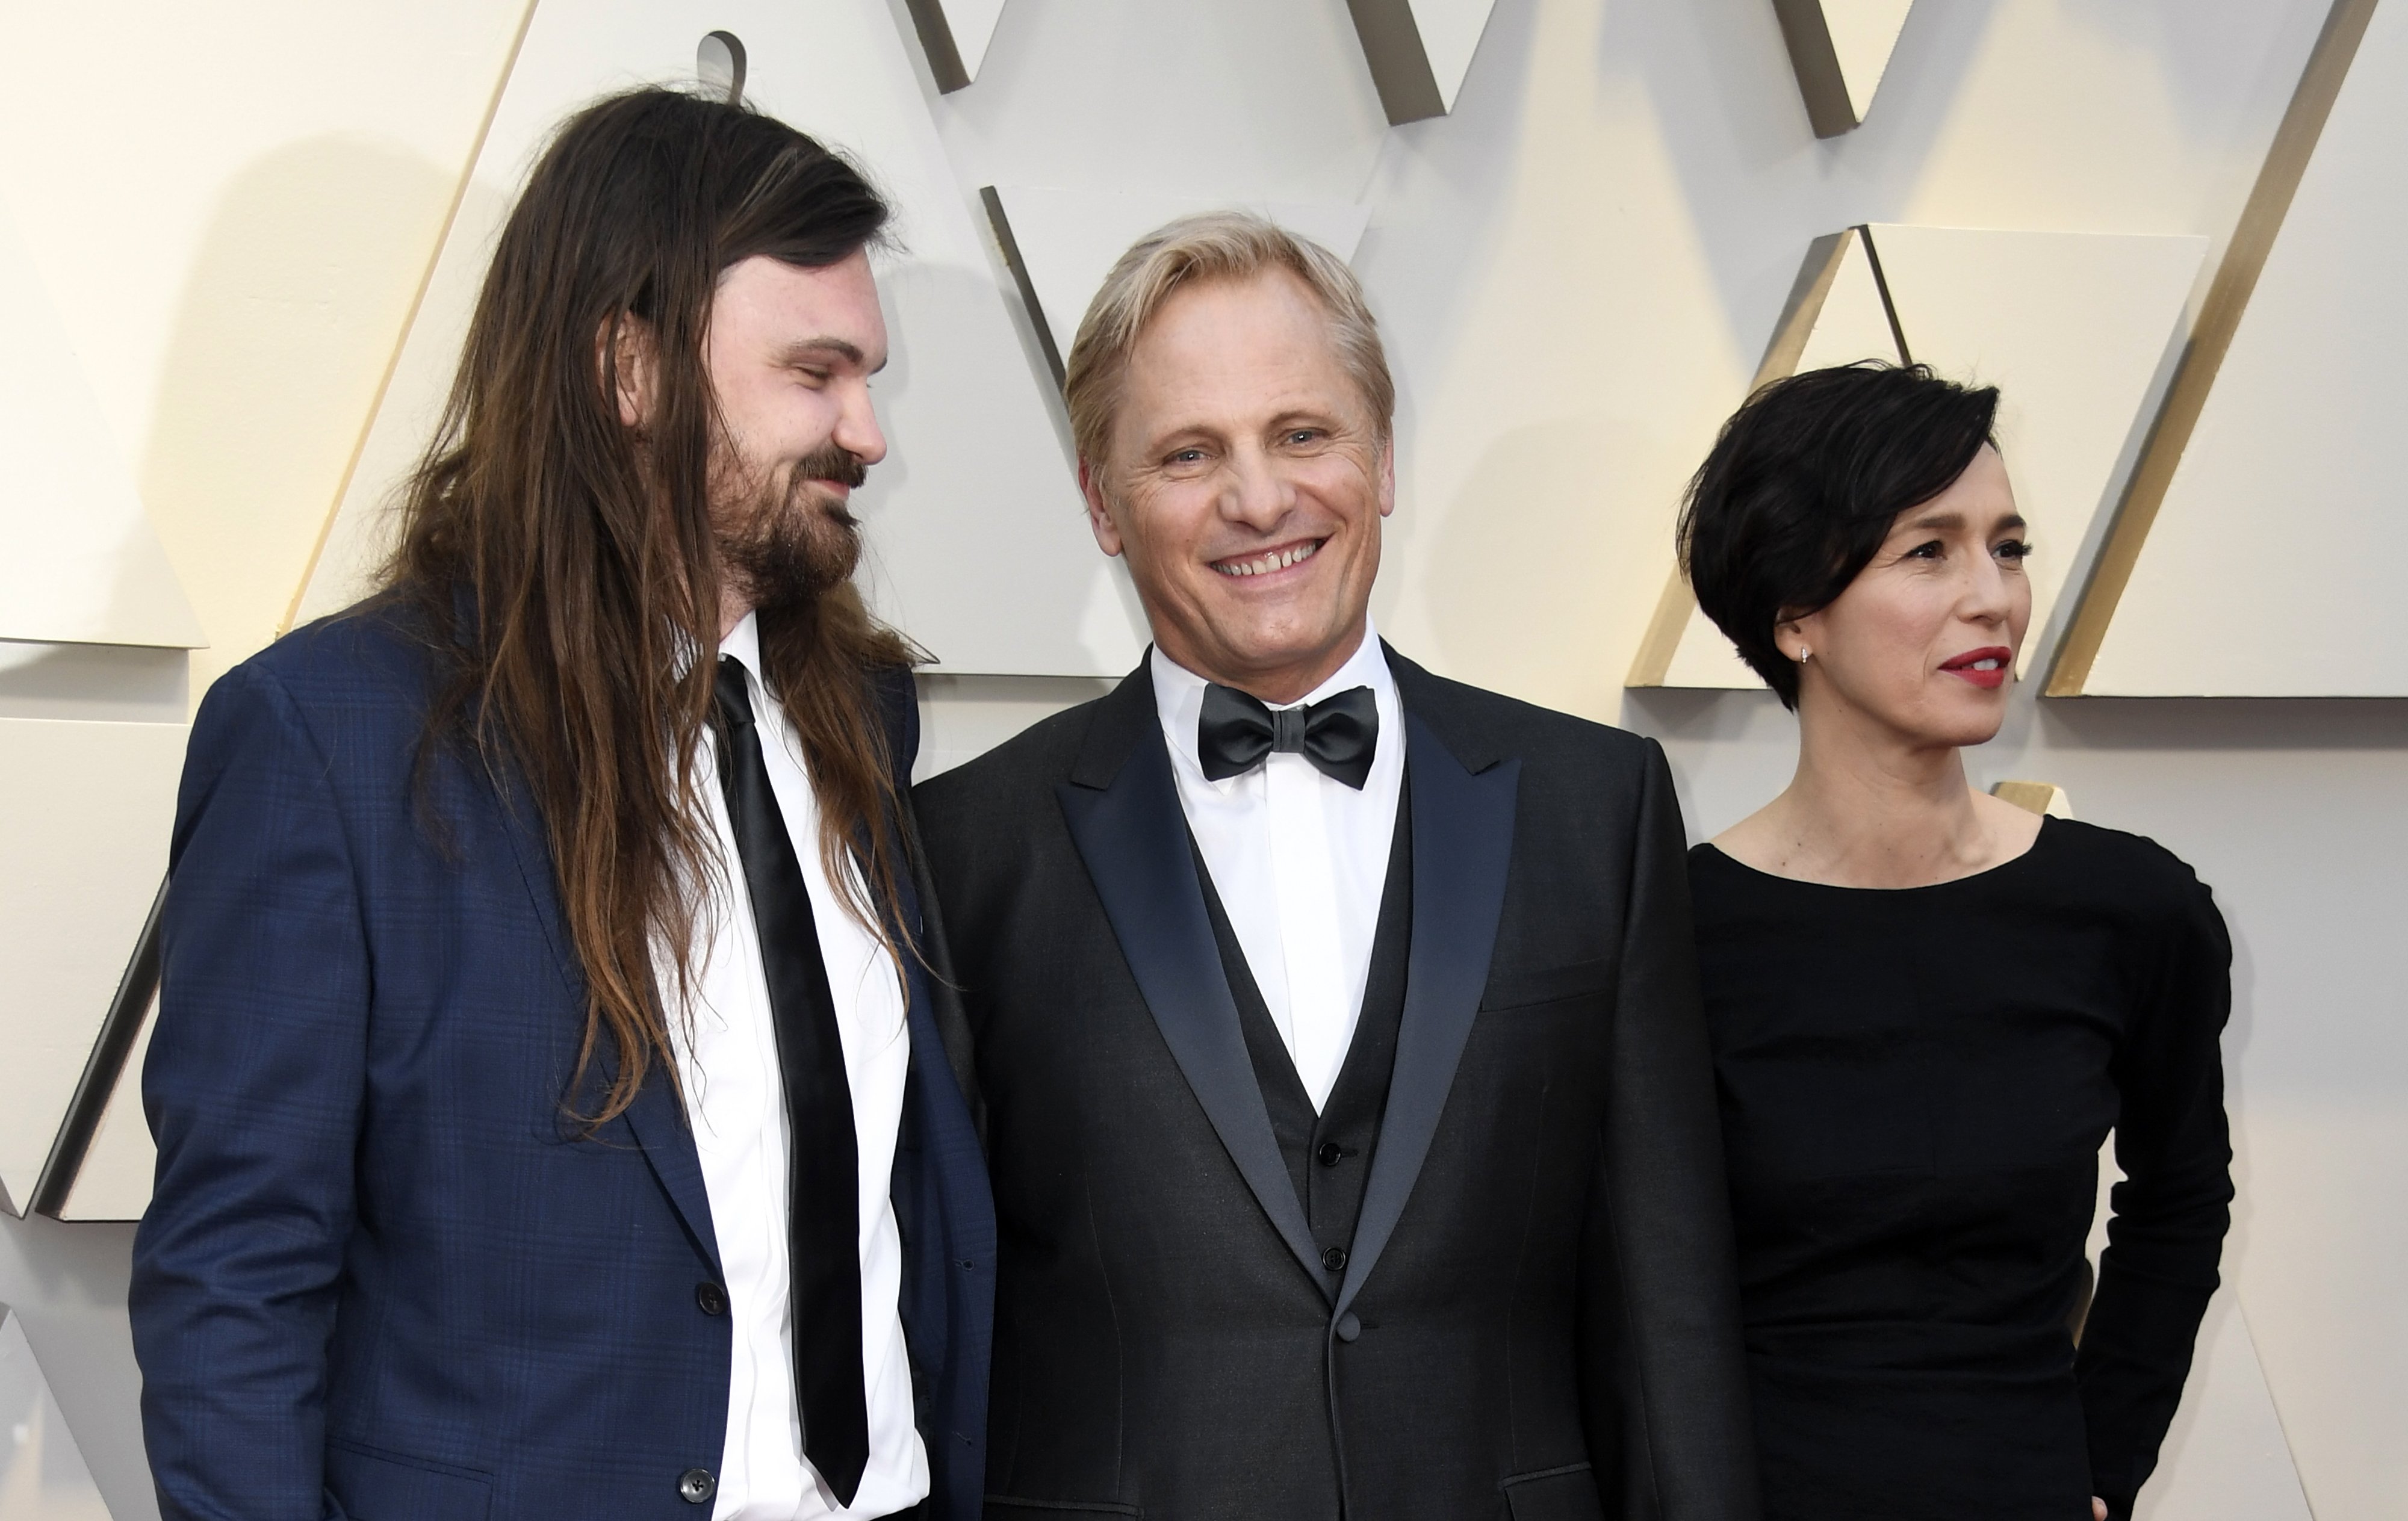 Henry Mortensen, Viggo Mortensen y Ariadna Gil el 24 de febrero de 2019 en Hollywood, California. | Foto: Getty Images